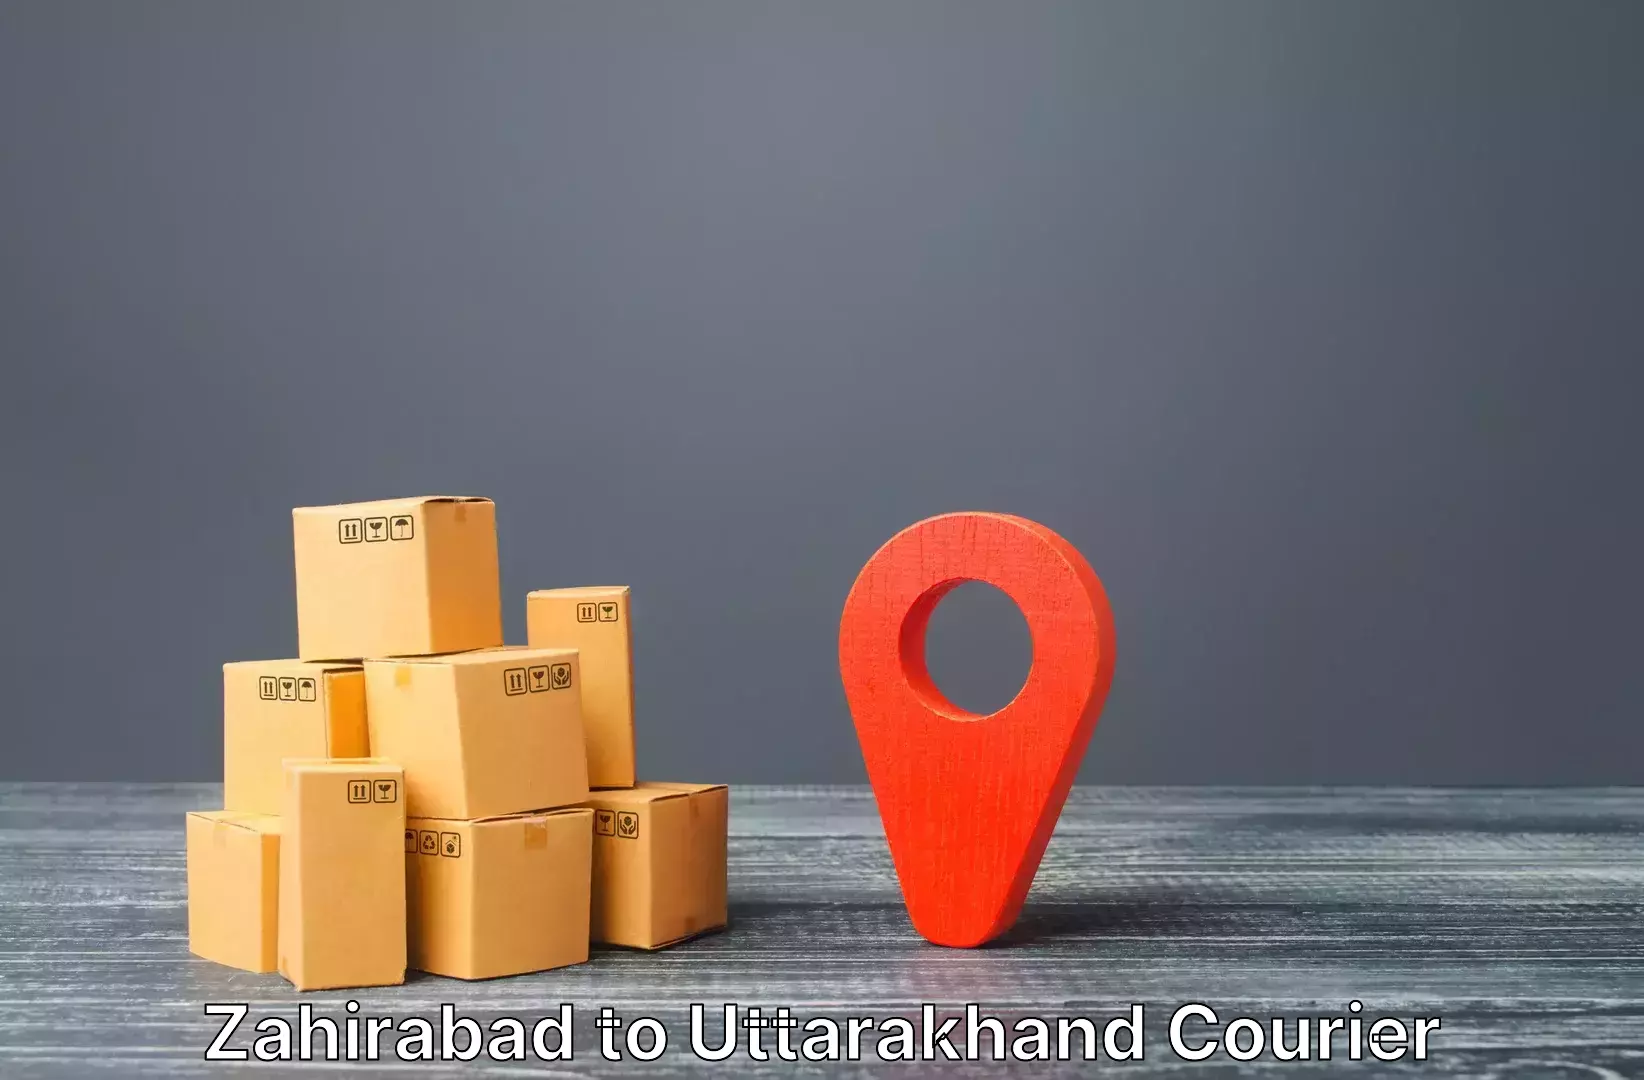 Luggage delivery app Zahirabad to Uttarakhand